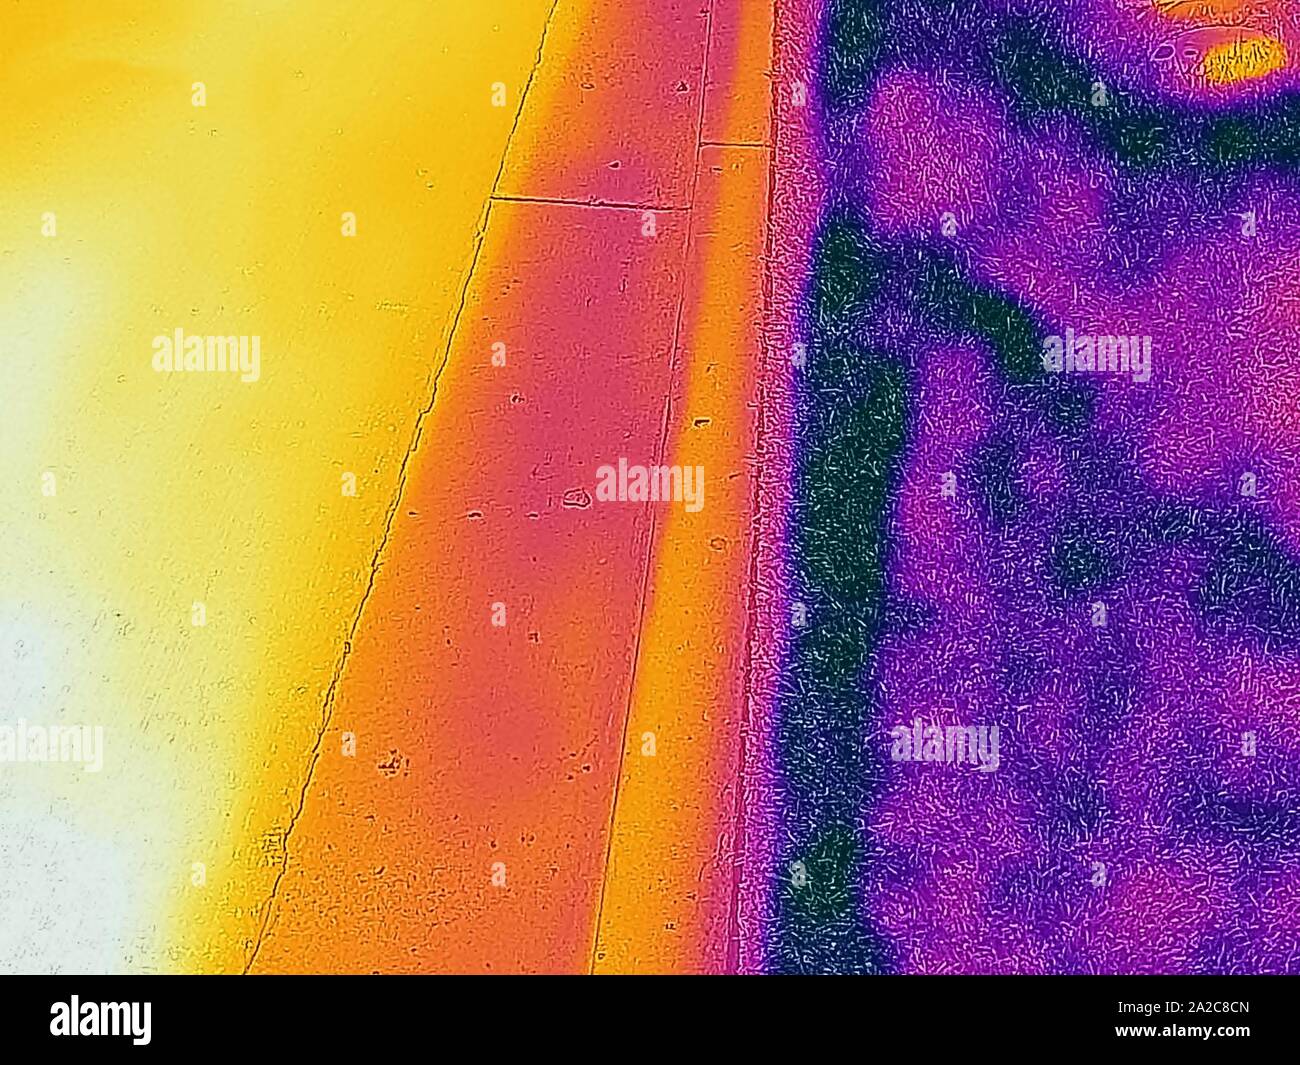 Wärmebild der Wärmebildkamera, mit Lichtbereichen, die höheren Temperaturen entsprechen, kontrastreich (L bis R), sehr heißer schwarzer Asphaltstraßenbelag, kälter weißer Betonrinne, Und kühle Grasfläche, die den urbanen Wärmeinseleffekt illustriert, bei dem eine größere Anzahl gepflasterter Flächen in Städten, San Ramon, Kalifornien, am 2. September 2019, zu höheren Temperaturen führt. () Stockfoto